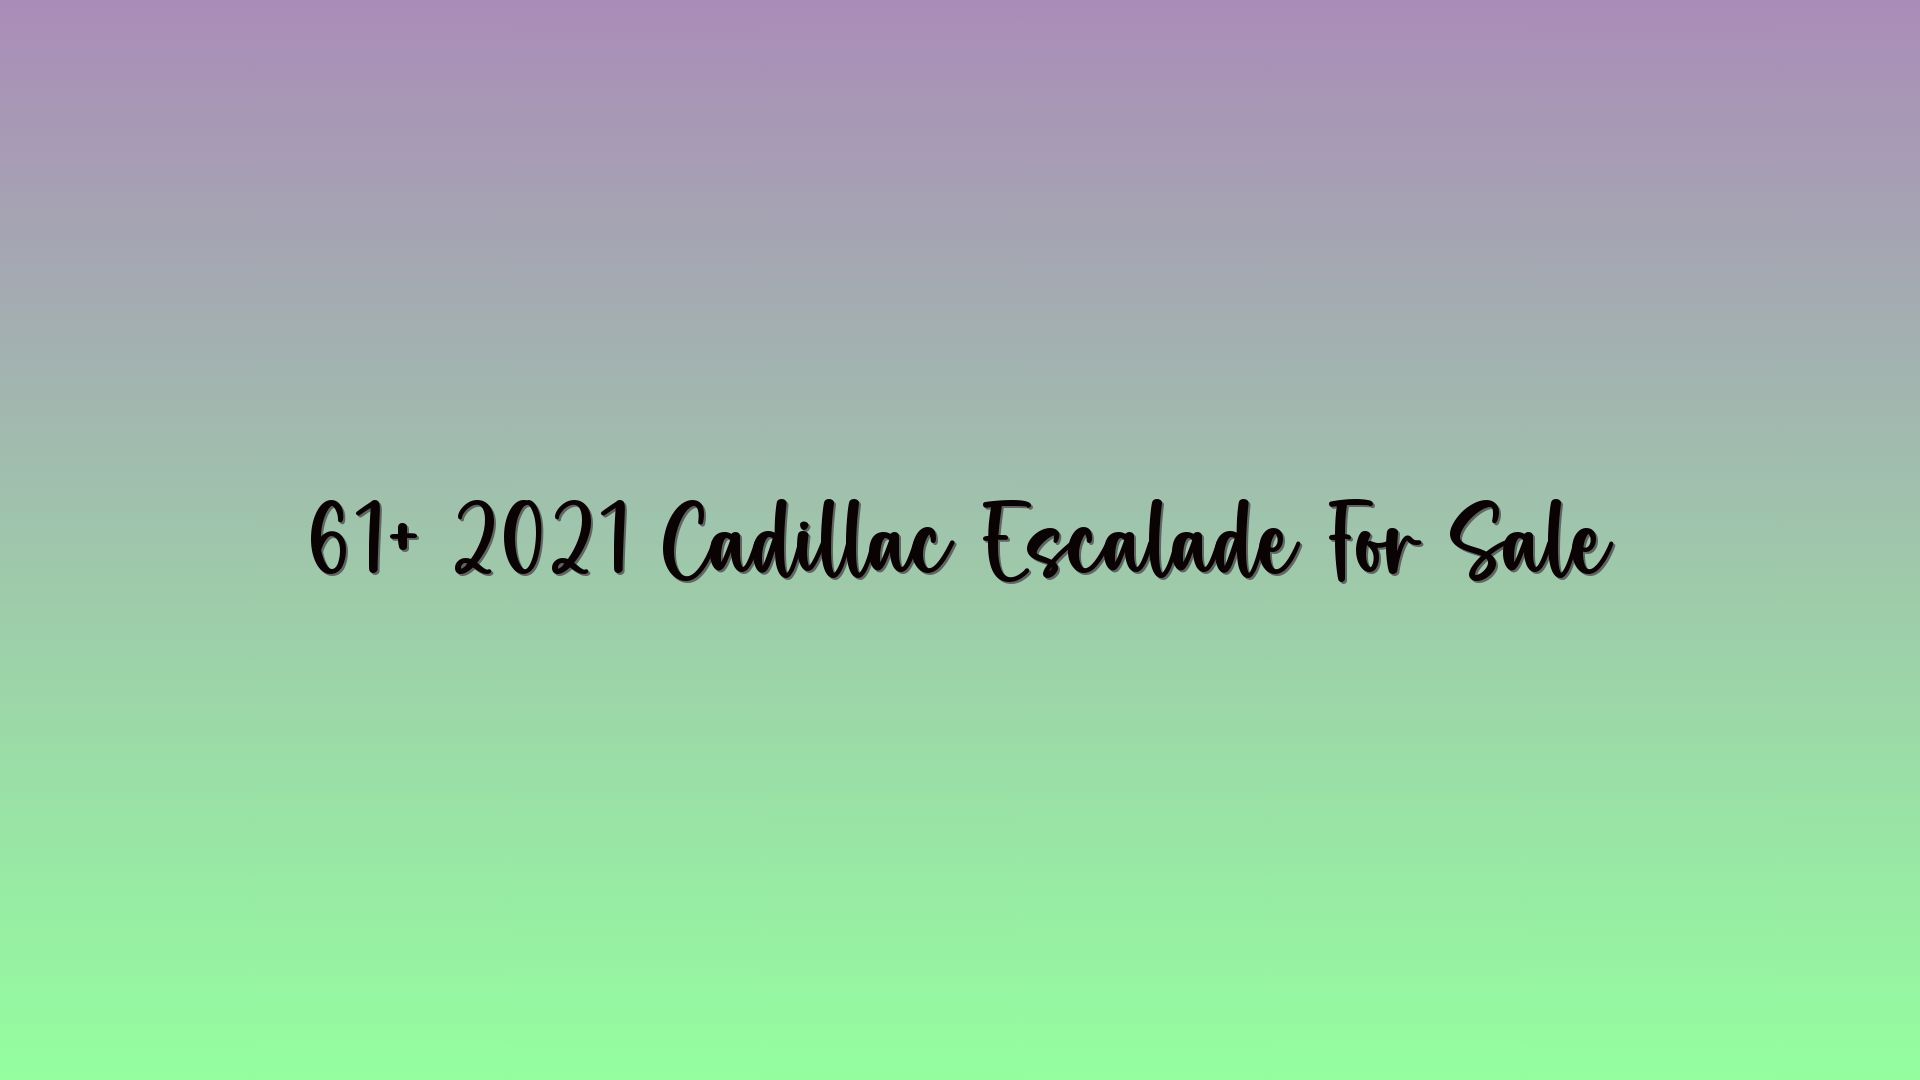 61+ 2021 Cadillac Escalade For Sale